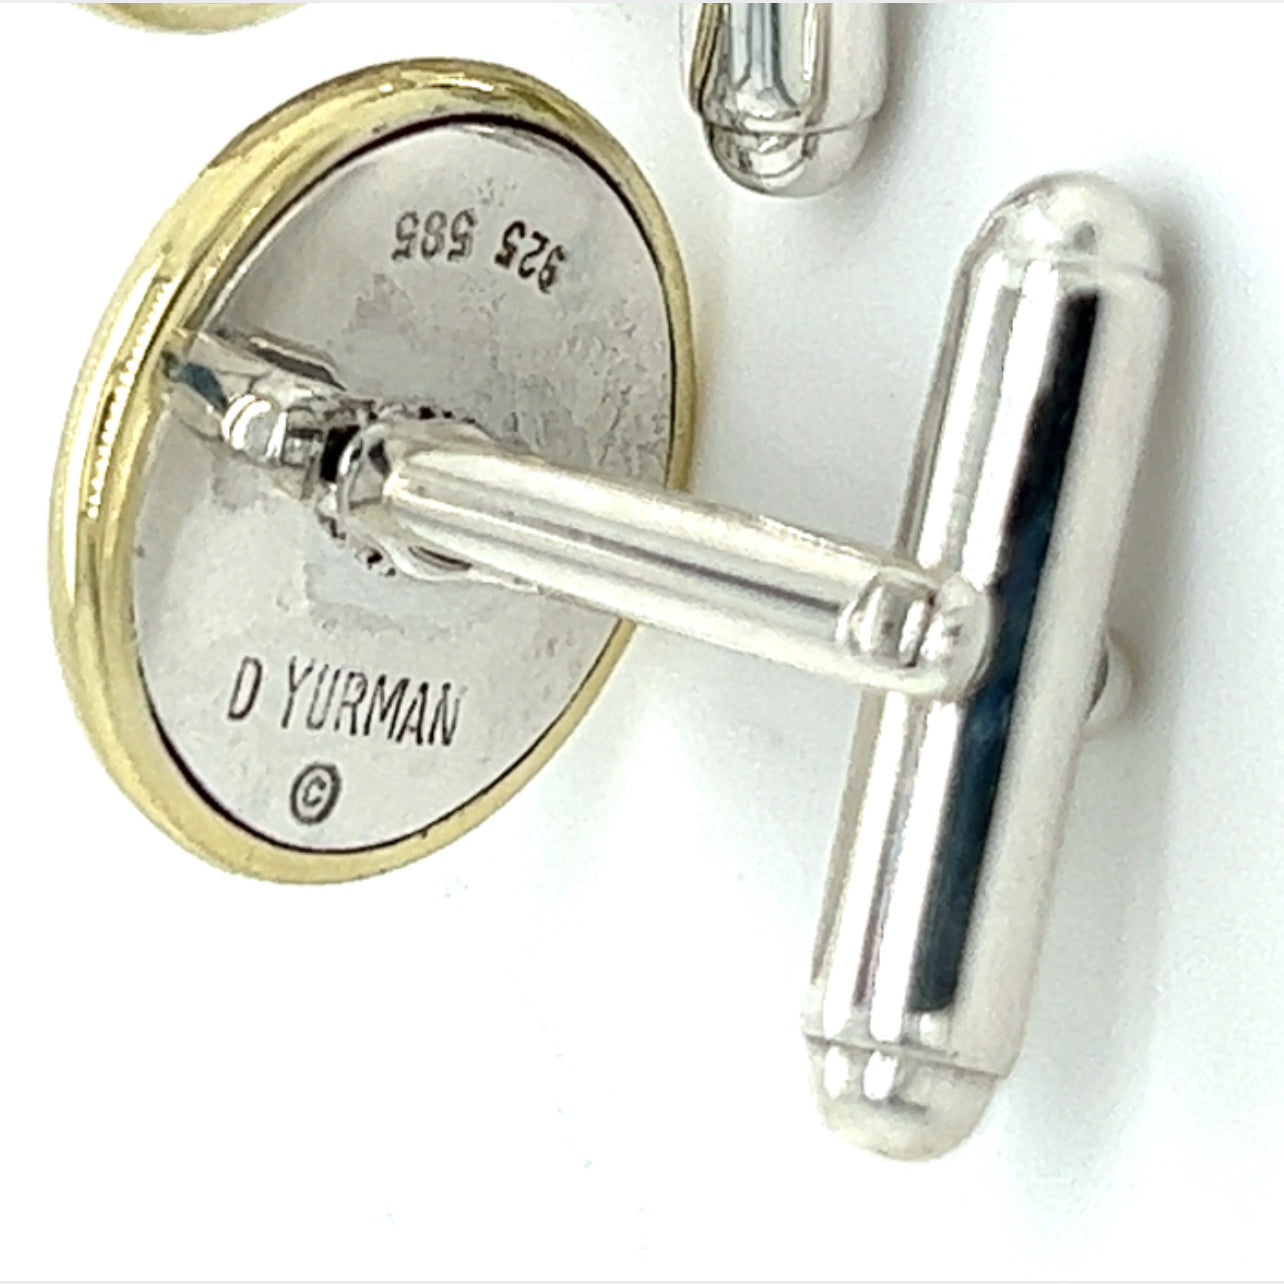 David Yurman Estate Cufflinks Sterling Silver + 14k Gold DY133 - Certified Fine Jewelry